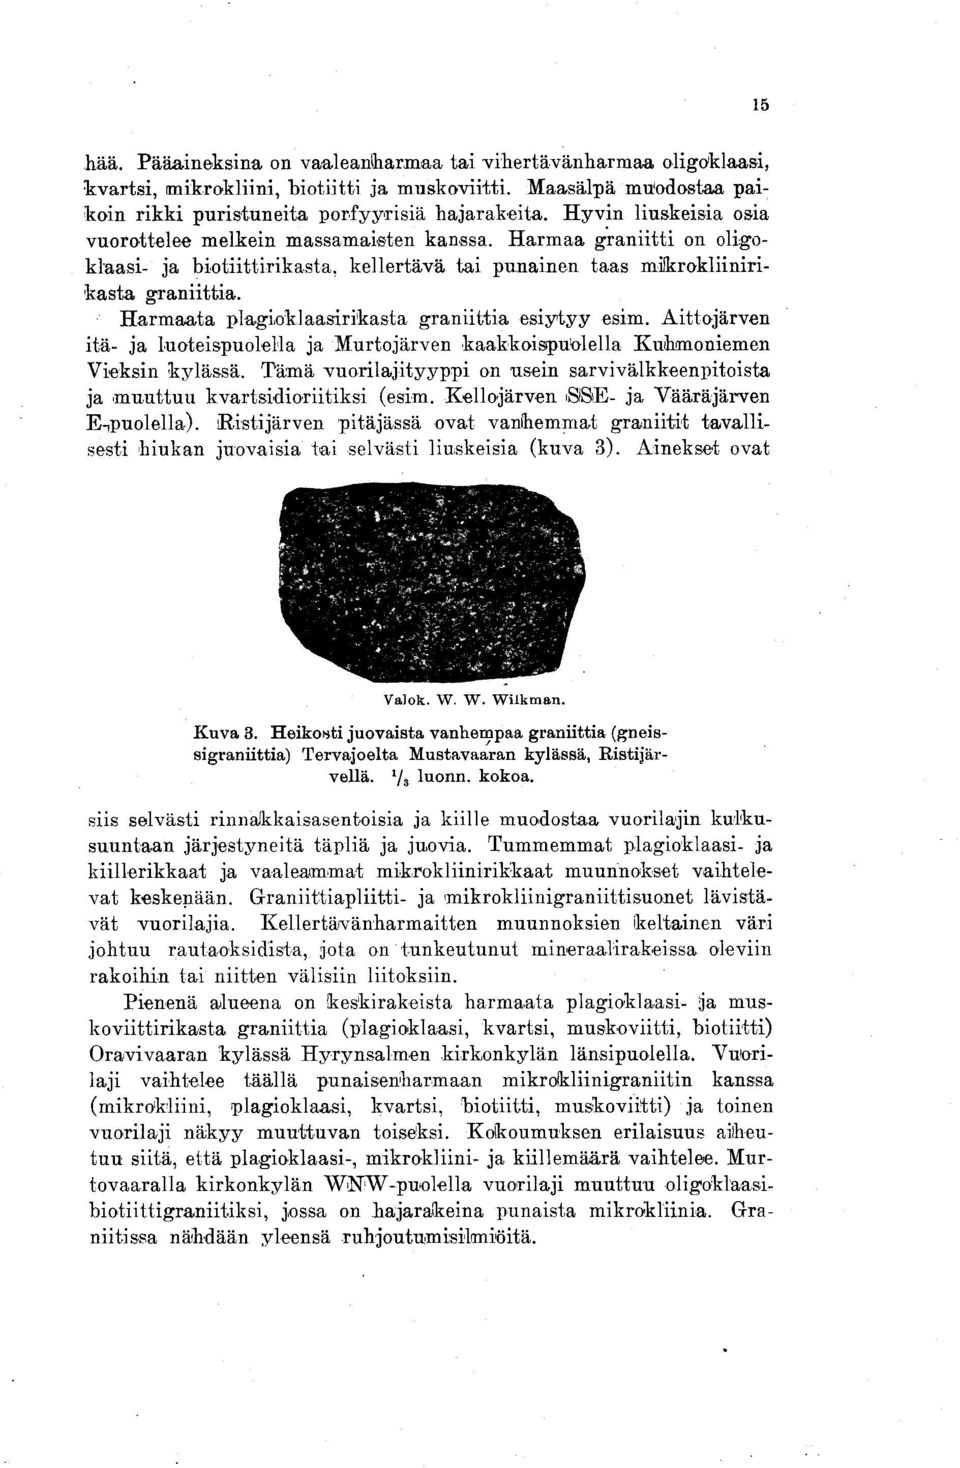 Harmaata plagioklaasirikasta graniittia esiytyy esim. Aittojärven itä- ja luoteispuolella ja Murtojärven kaakkoispuolella Kuhmoniemen Vieksin kylässä.